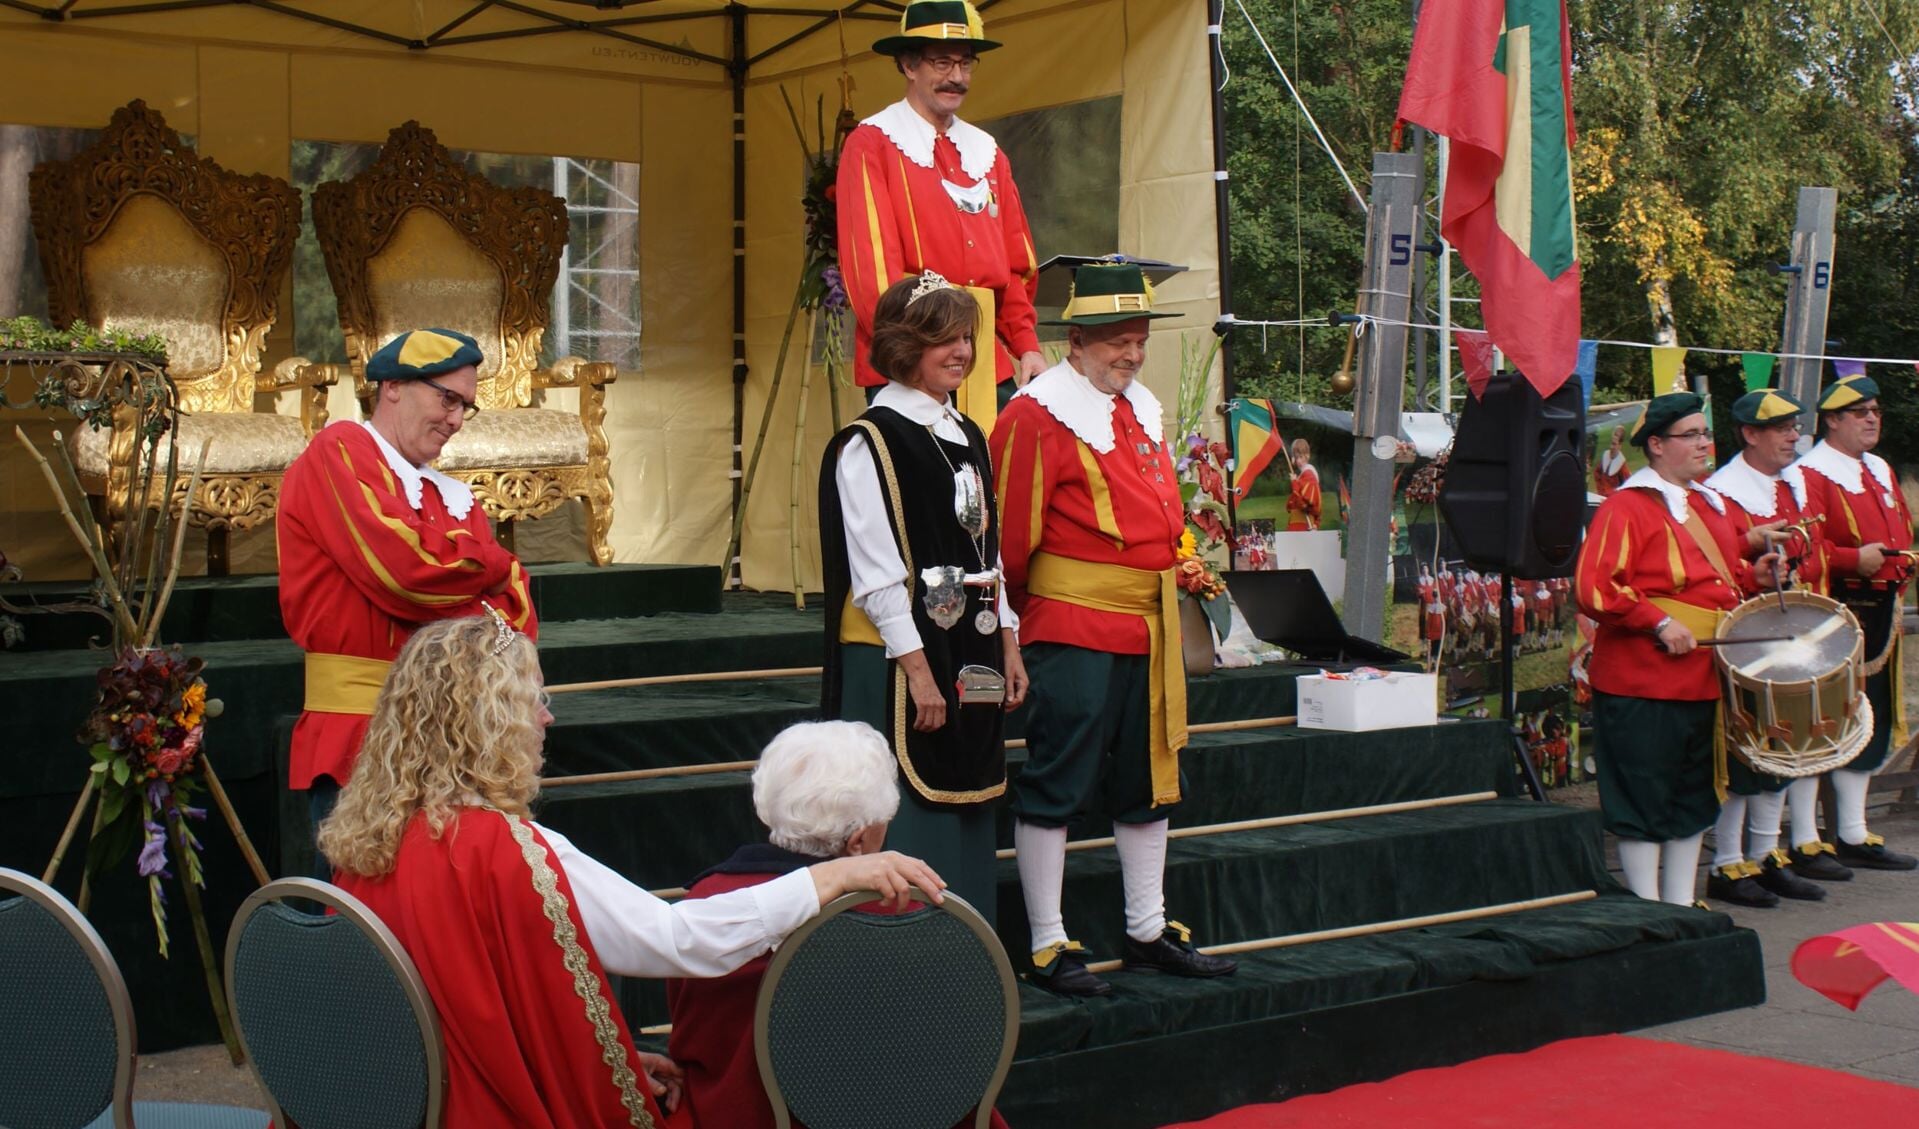 De huldiging  koningspaar Truus van de Ven en Ronald Santbergen in 2018 